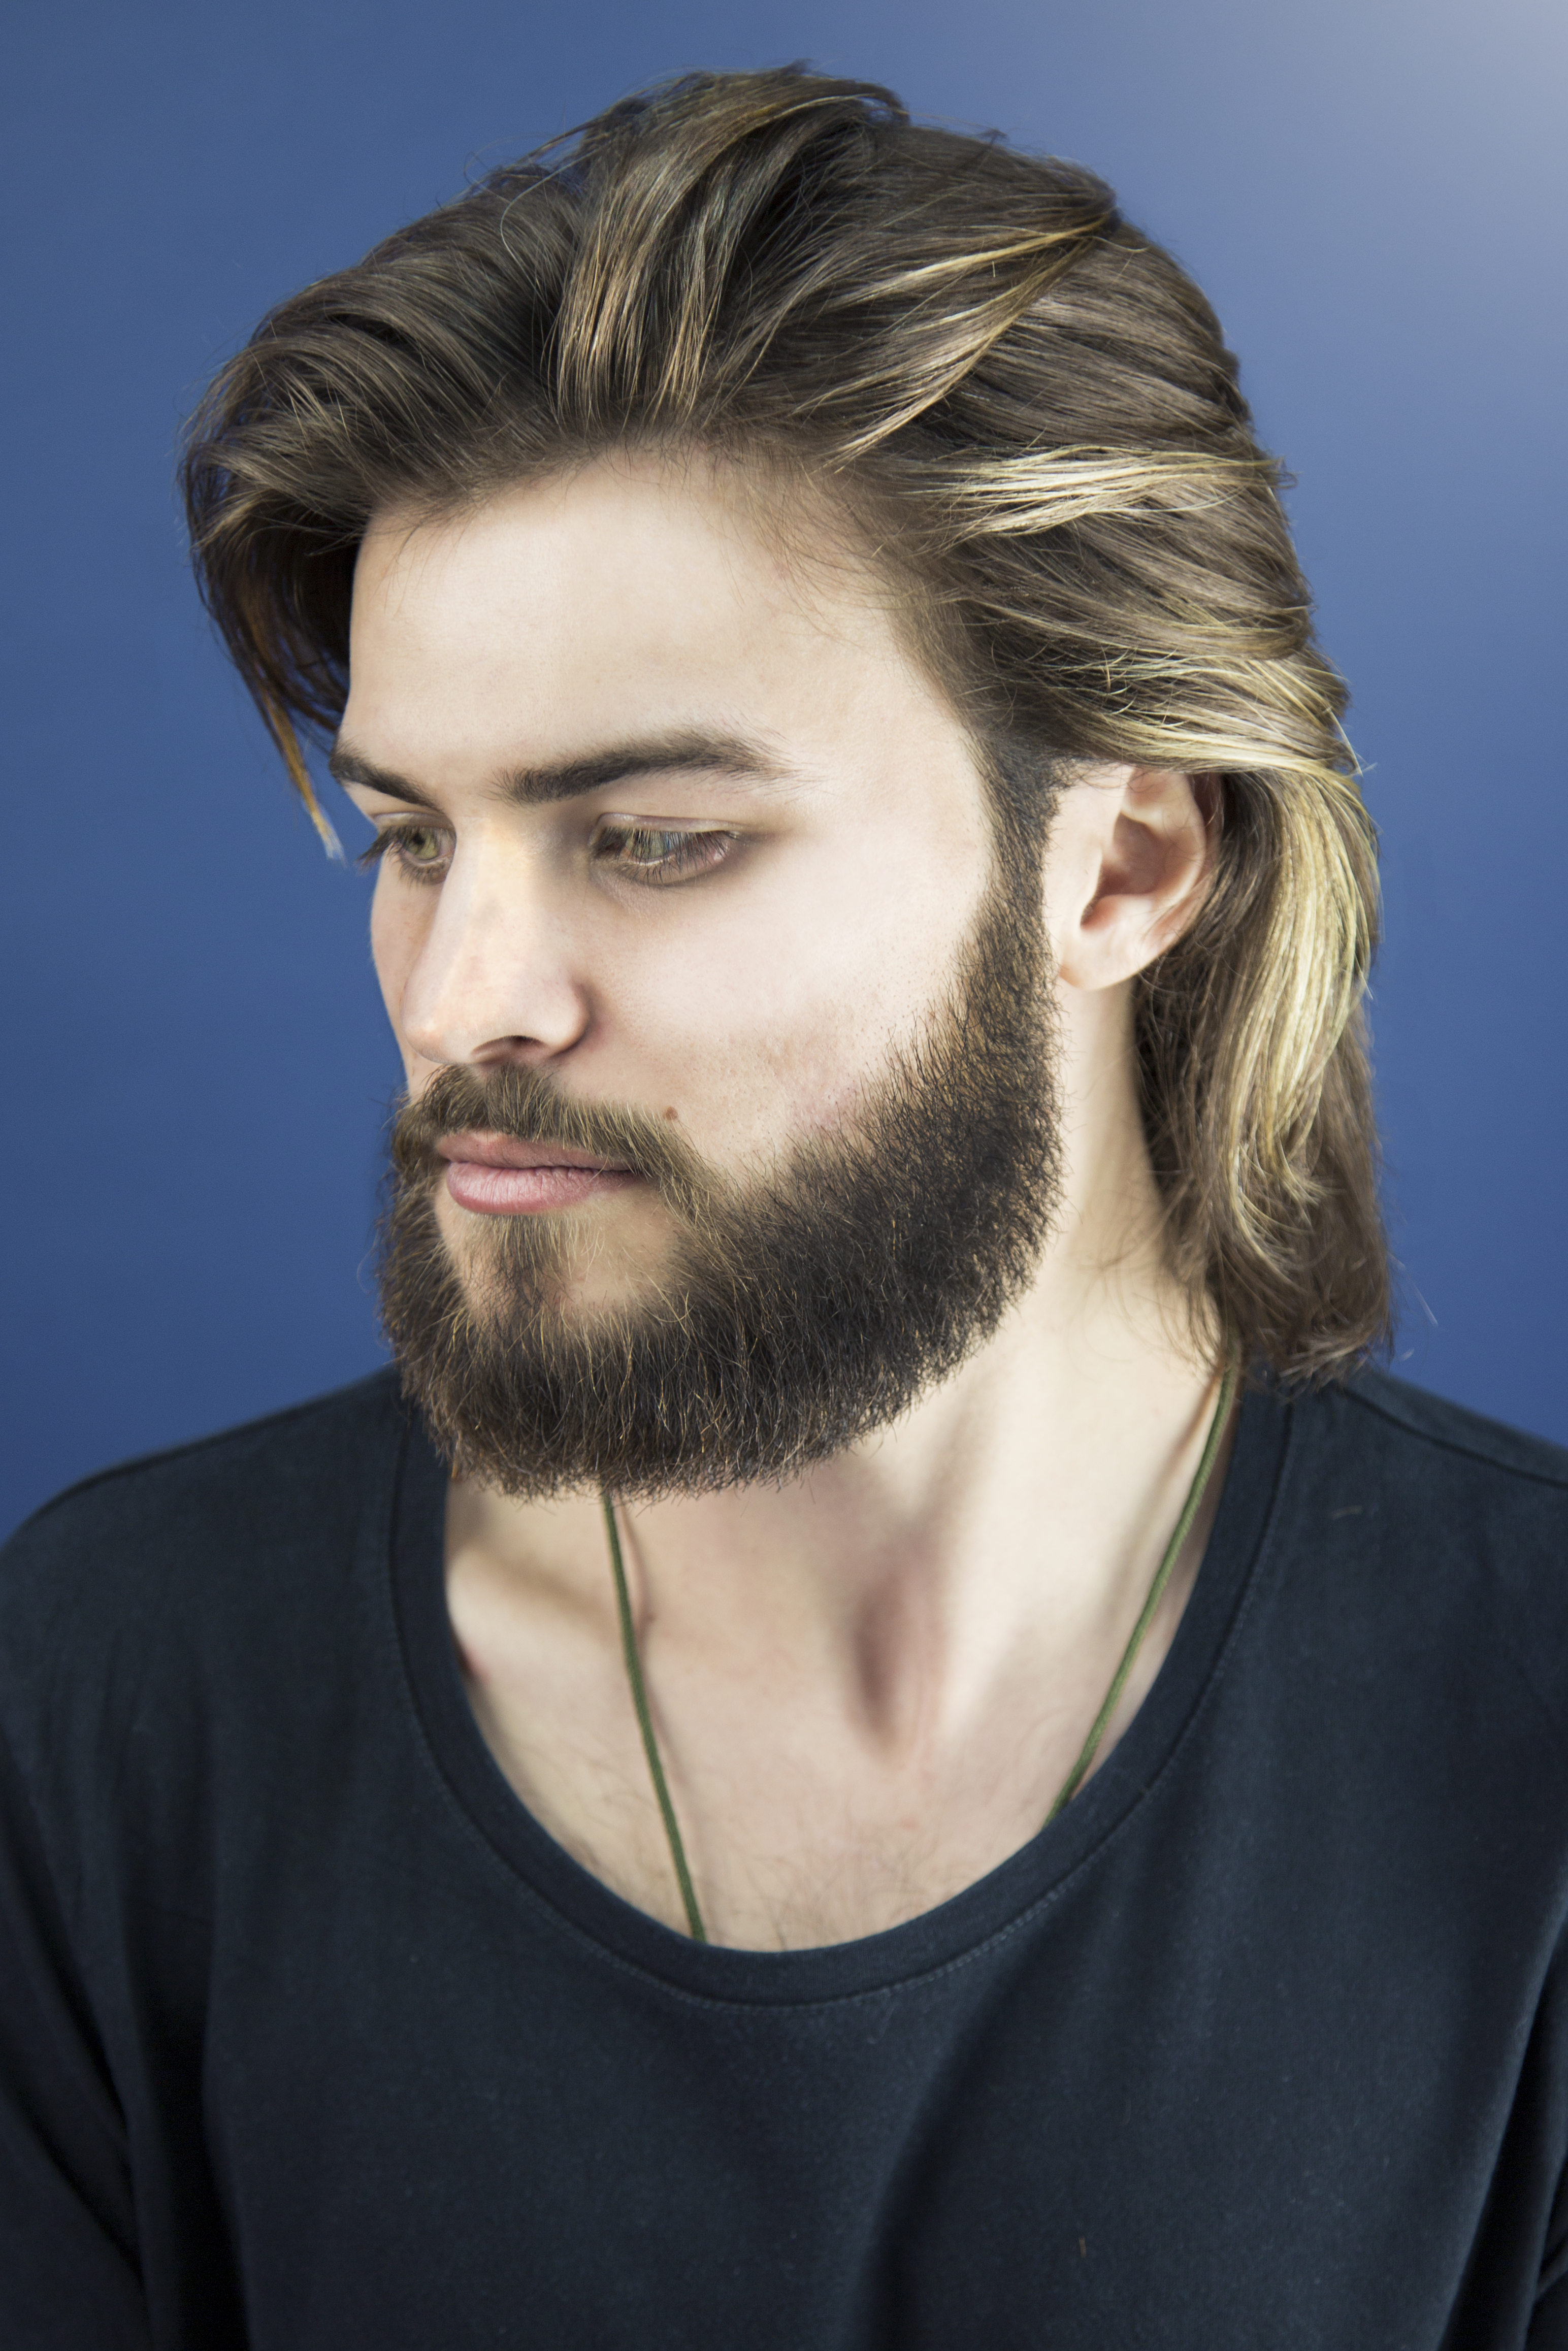 Longer Hair Shorter Beards 2019 S Barbering Trends Revealed